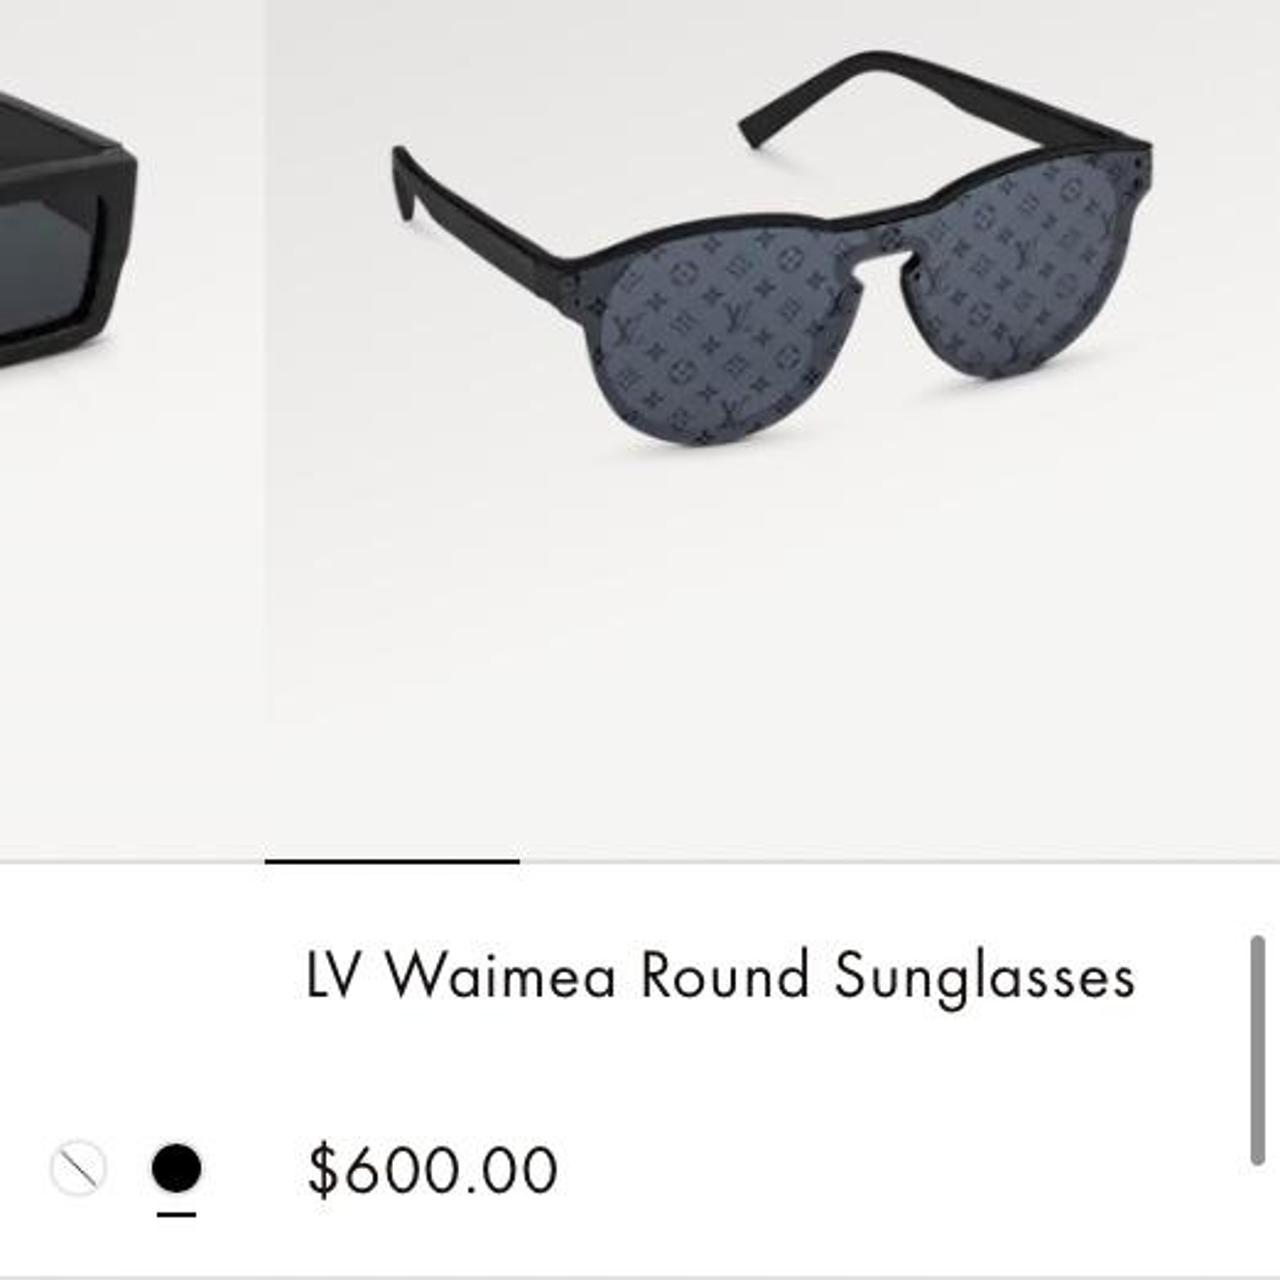 Lv waimea sunglasses available now #shoes #designer #louisvuitton